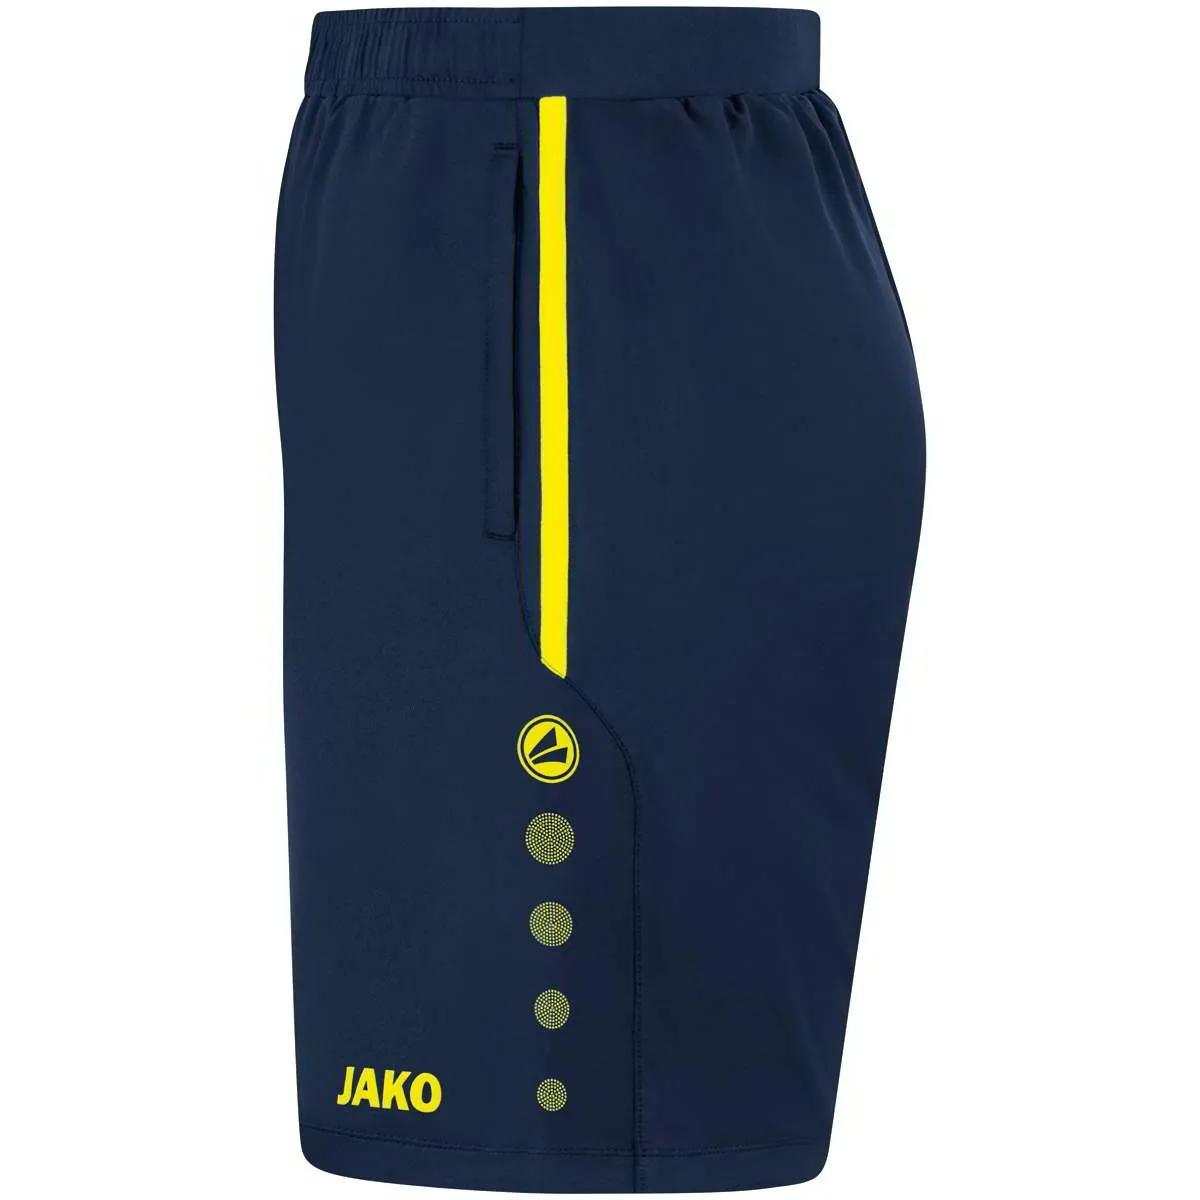 Jako training shorts Allround navy/neon yellow